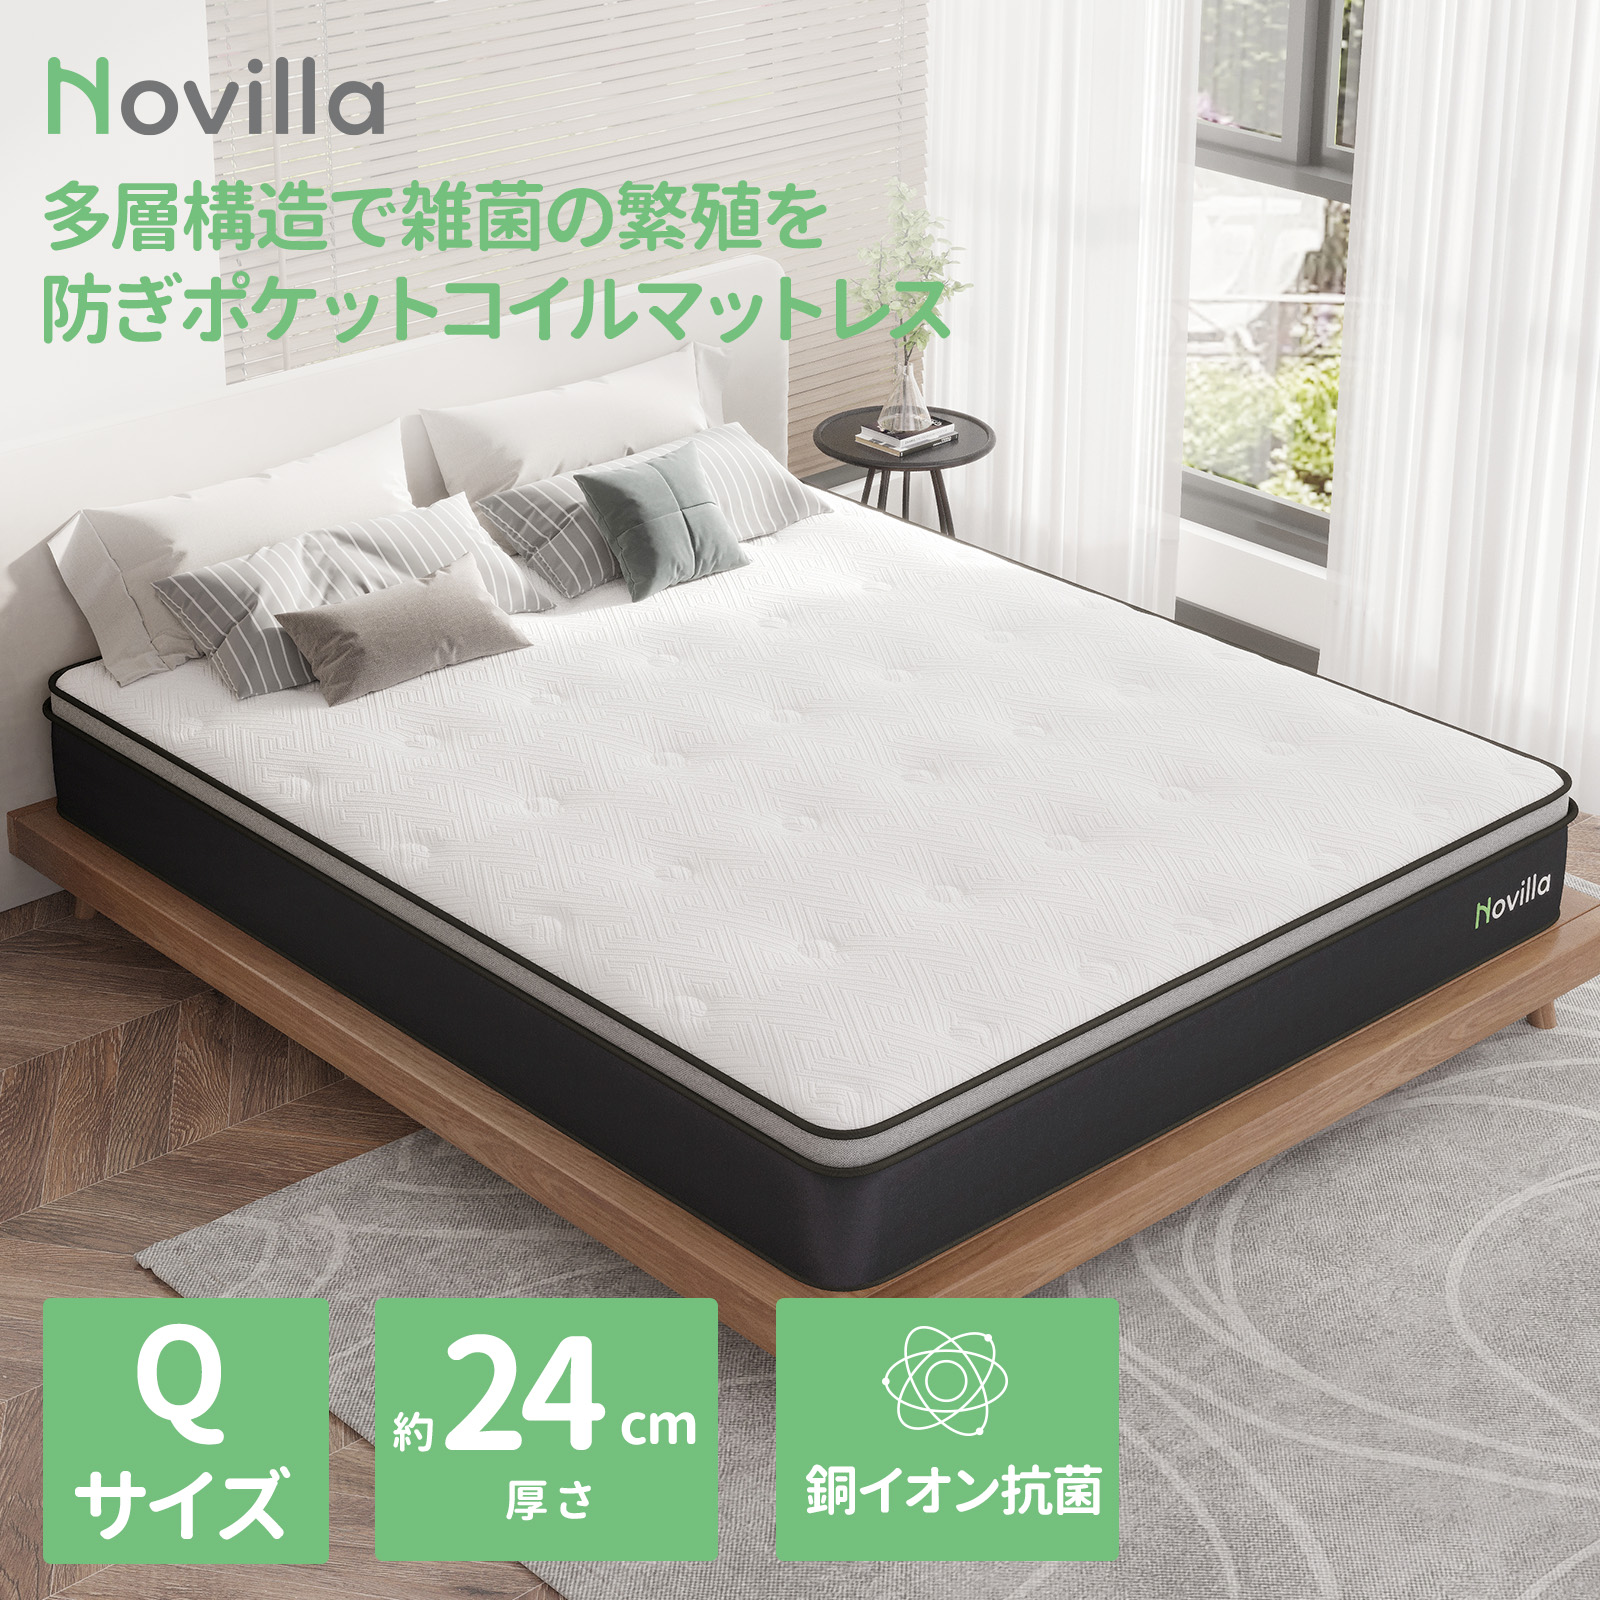 【楽天市場】Novilla マットレス クイーン 3ゾーン ポケットコイル クイーンサイズ スプリングマットレス ベッドマットレス 銅イオン